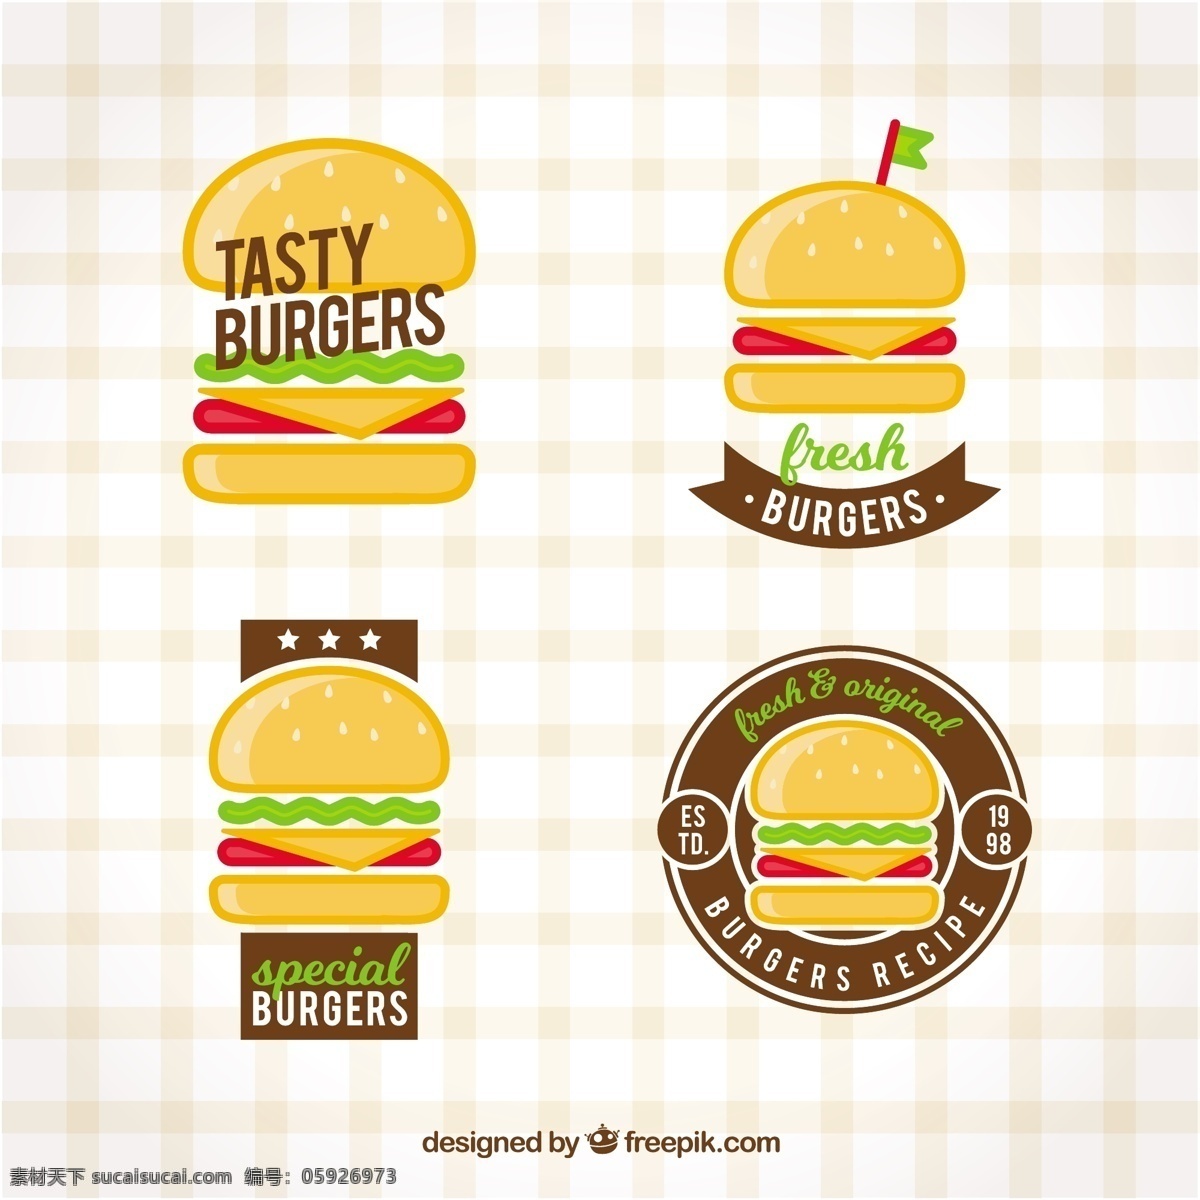 汉堡的标志集 标识 食品 商务 菜单 线 标签 企业 汉堡 食品标识 快餐 公司 企业形象 品牌 现代 食品菜单 奶酪 吃 象征 身份 汉堡包